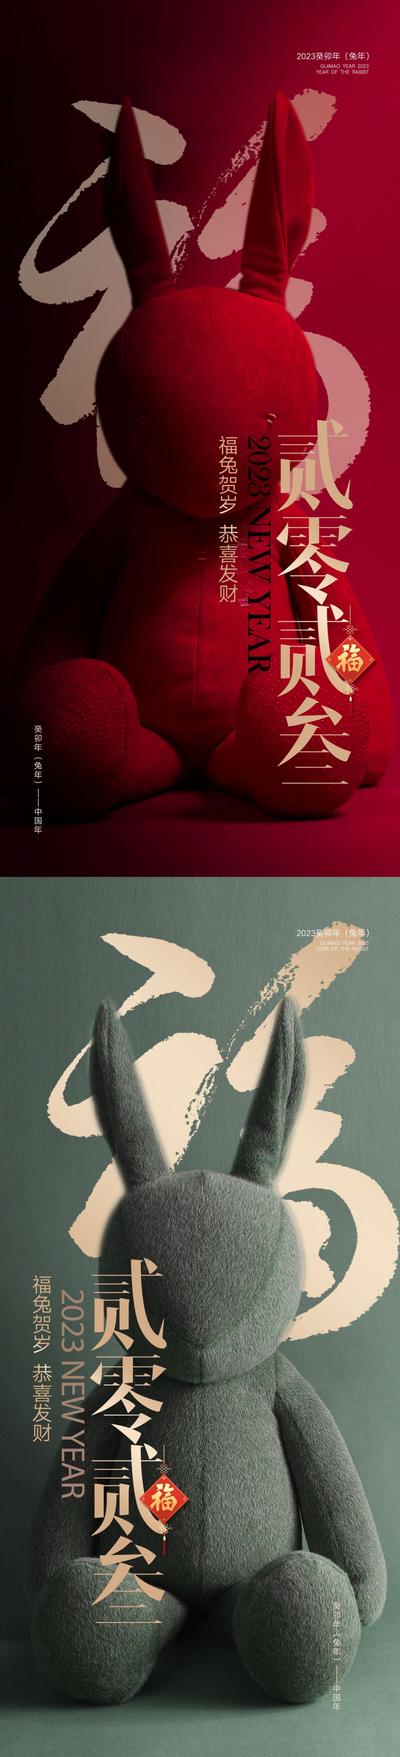 南门网 海报 兔年 公历节日 元旦 新年 庆祝 兔子